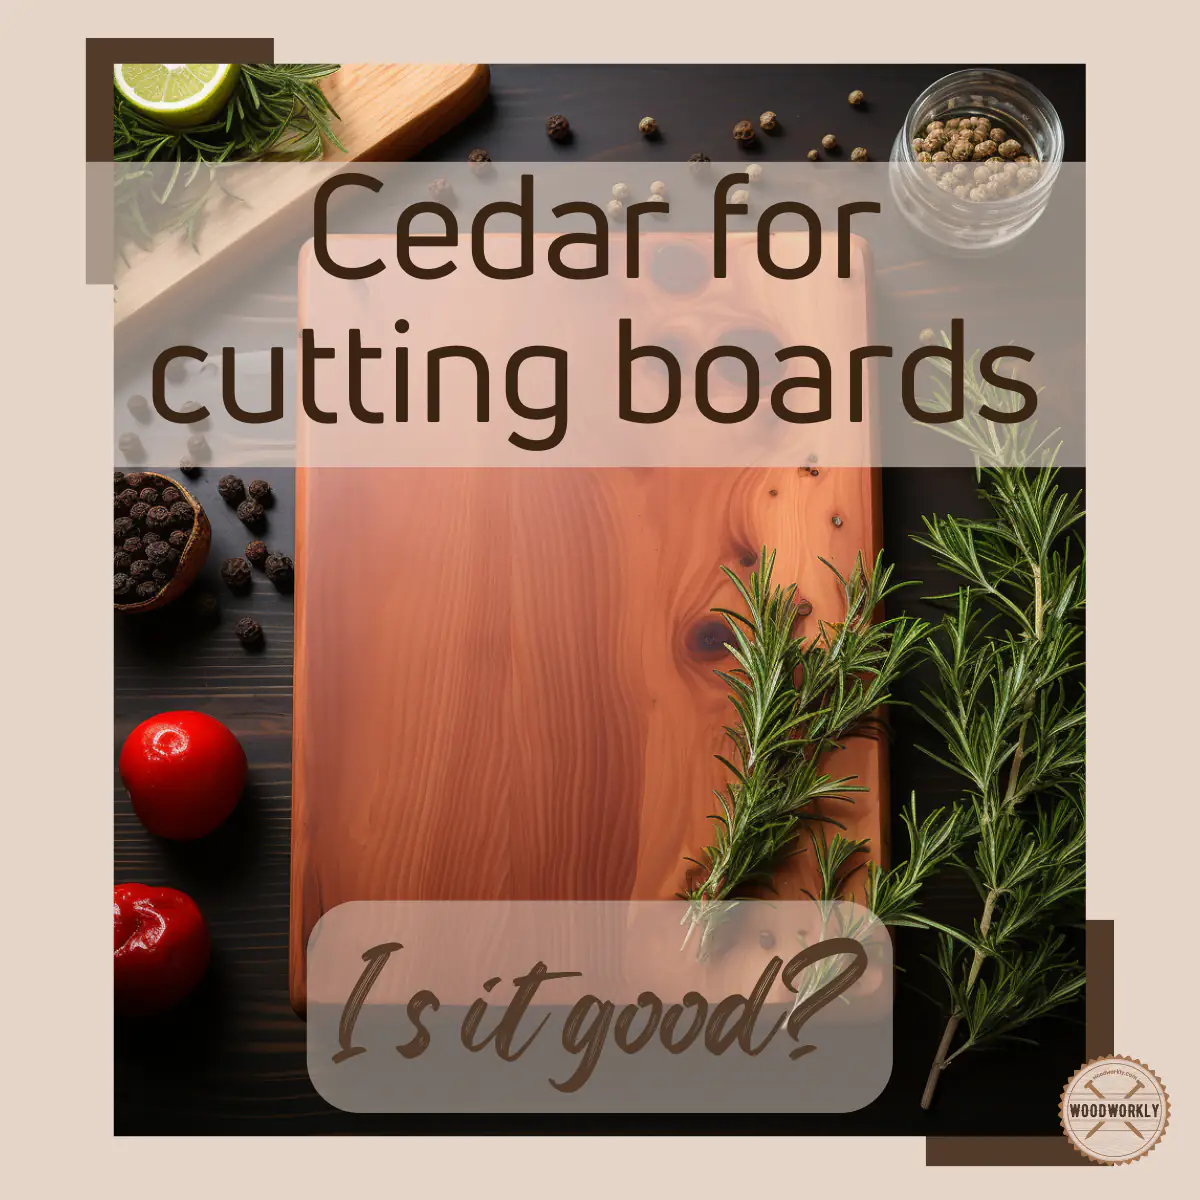 is cedar good for cutting board